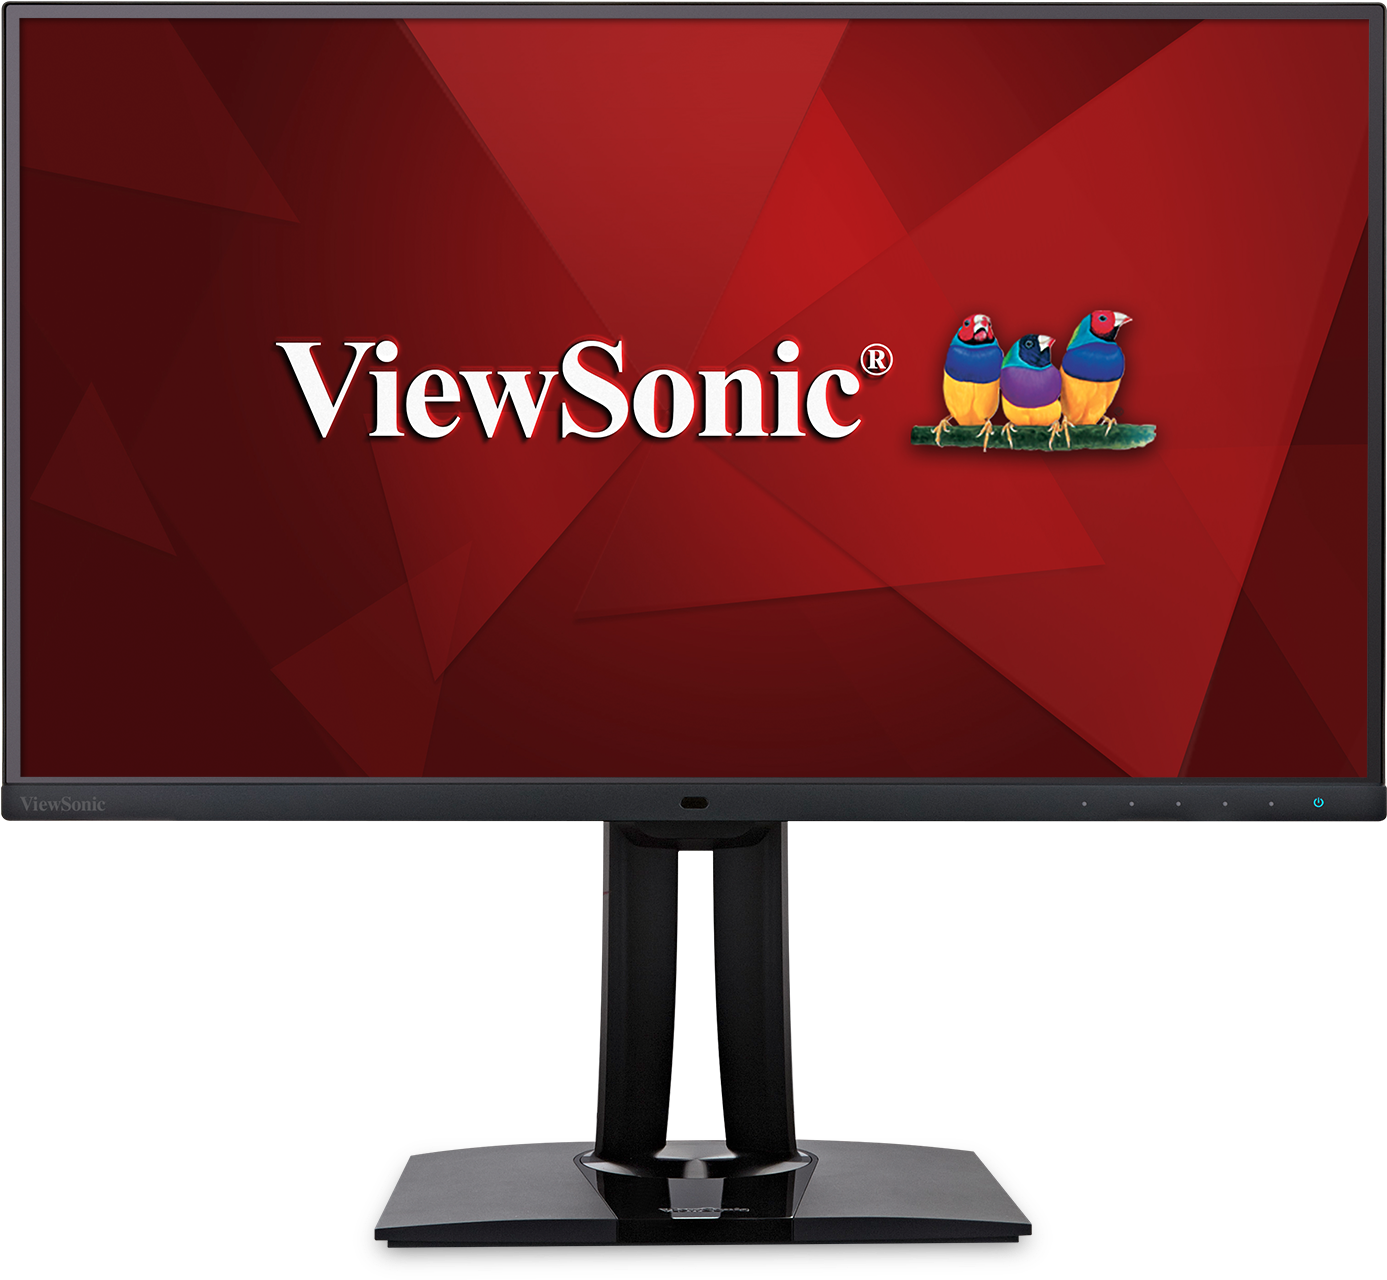 Viewsonic 27" Vp2771 - Viewsonic Vp2771 Clipart (1500x1500), Png Download